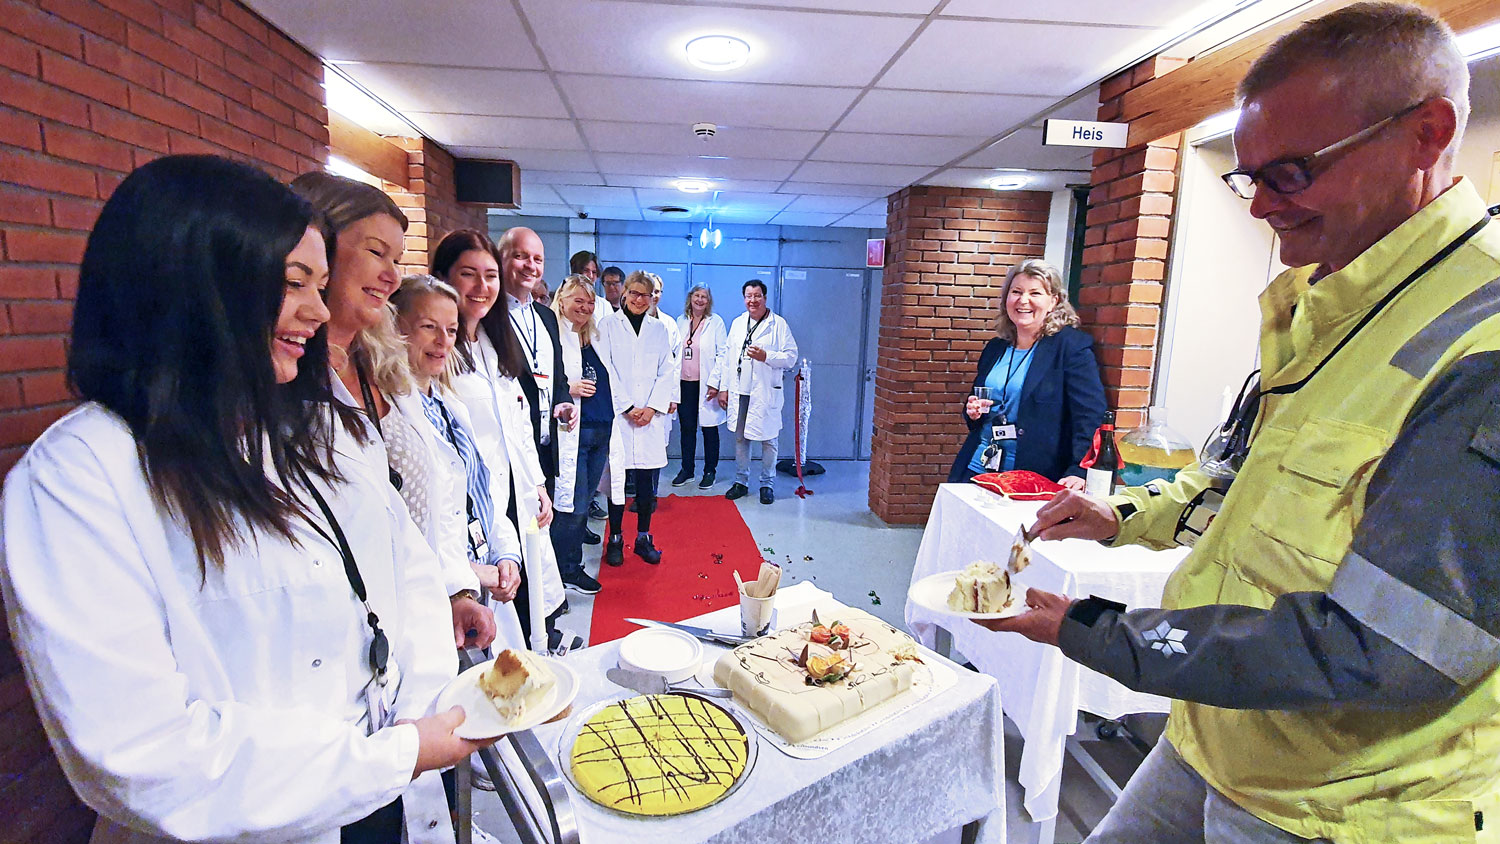 employees in white lab coates celebrating eating cake